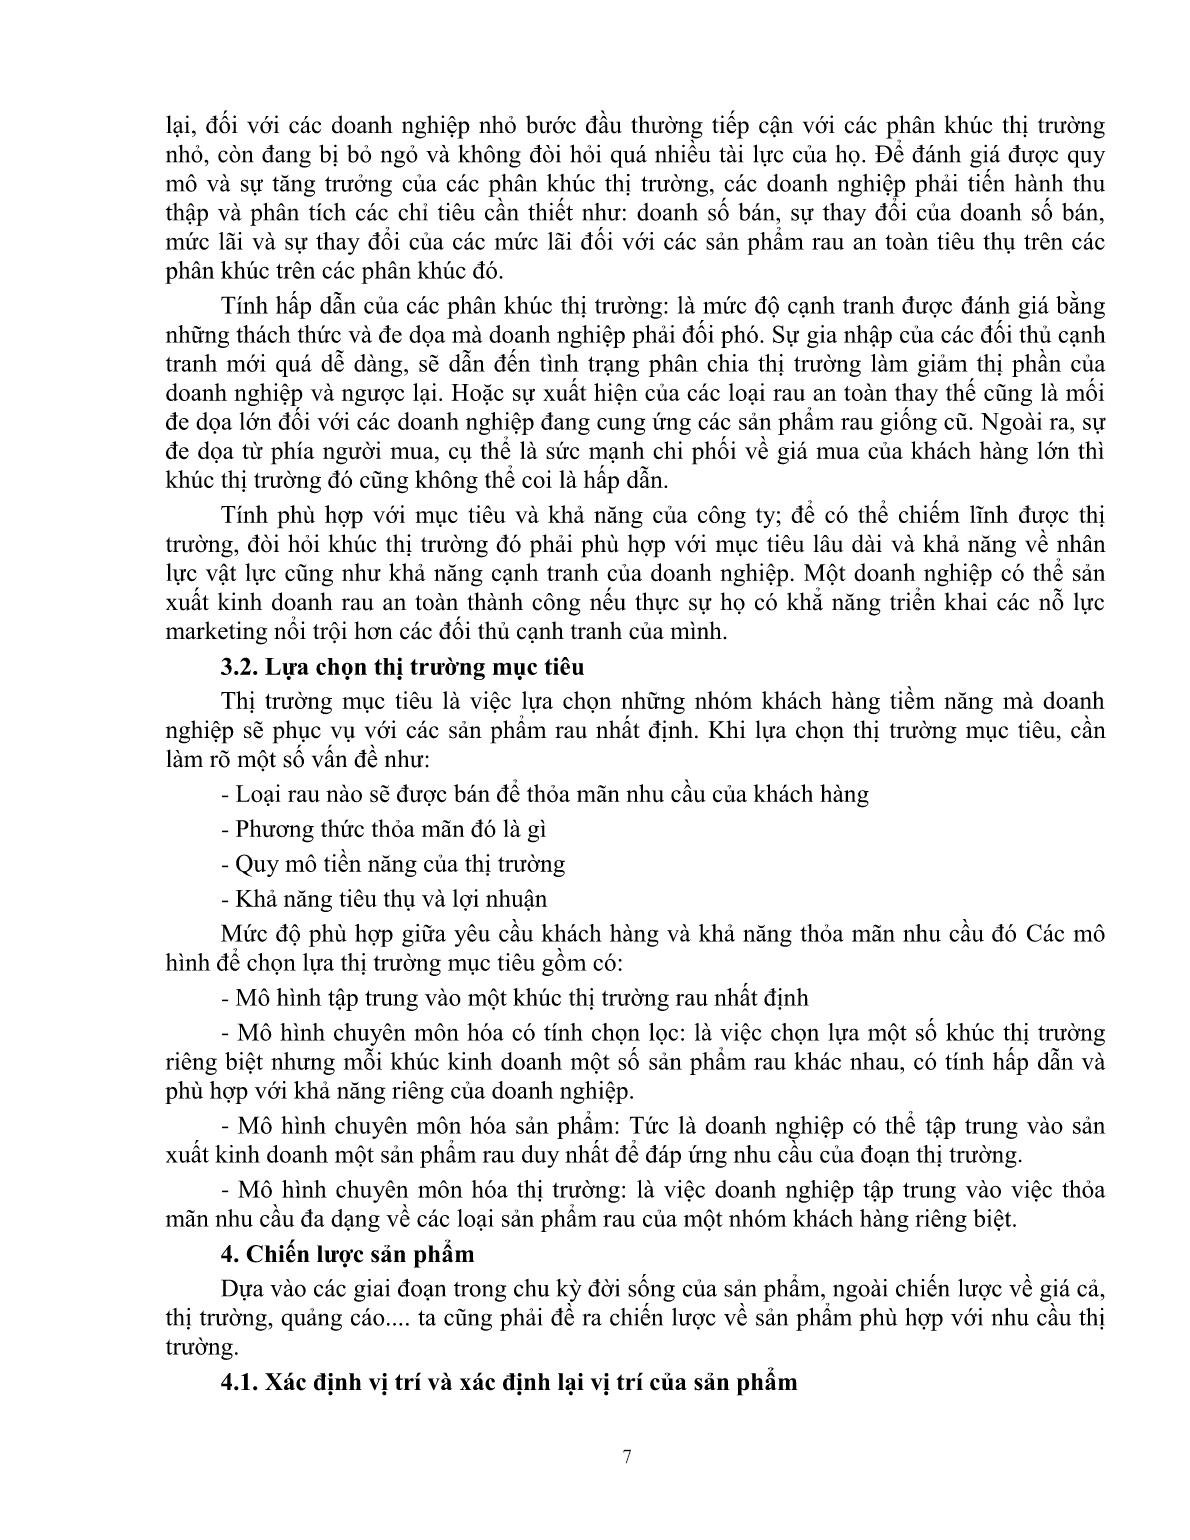 Giáo trình mô đun Tiêu thụ sản phẩn rau an toàn (Trình độ: Đào tạo dưới 03 tháng) trang 8